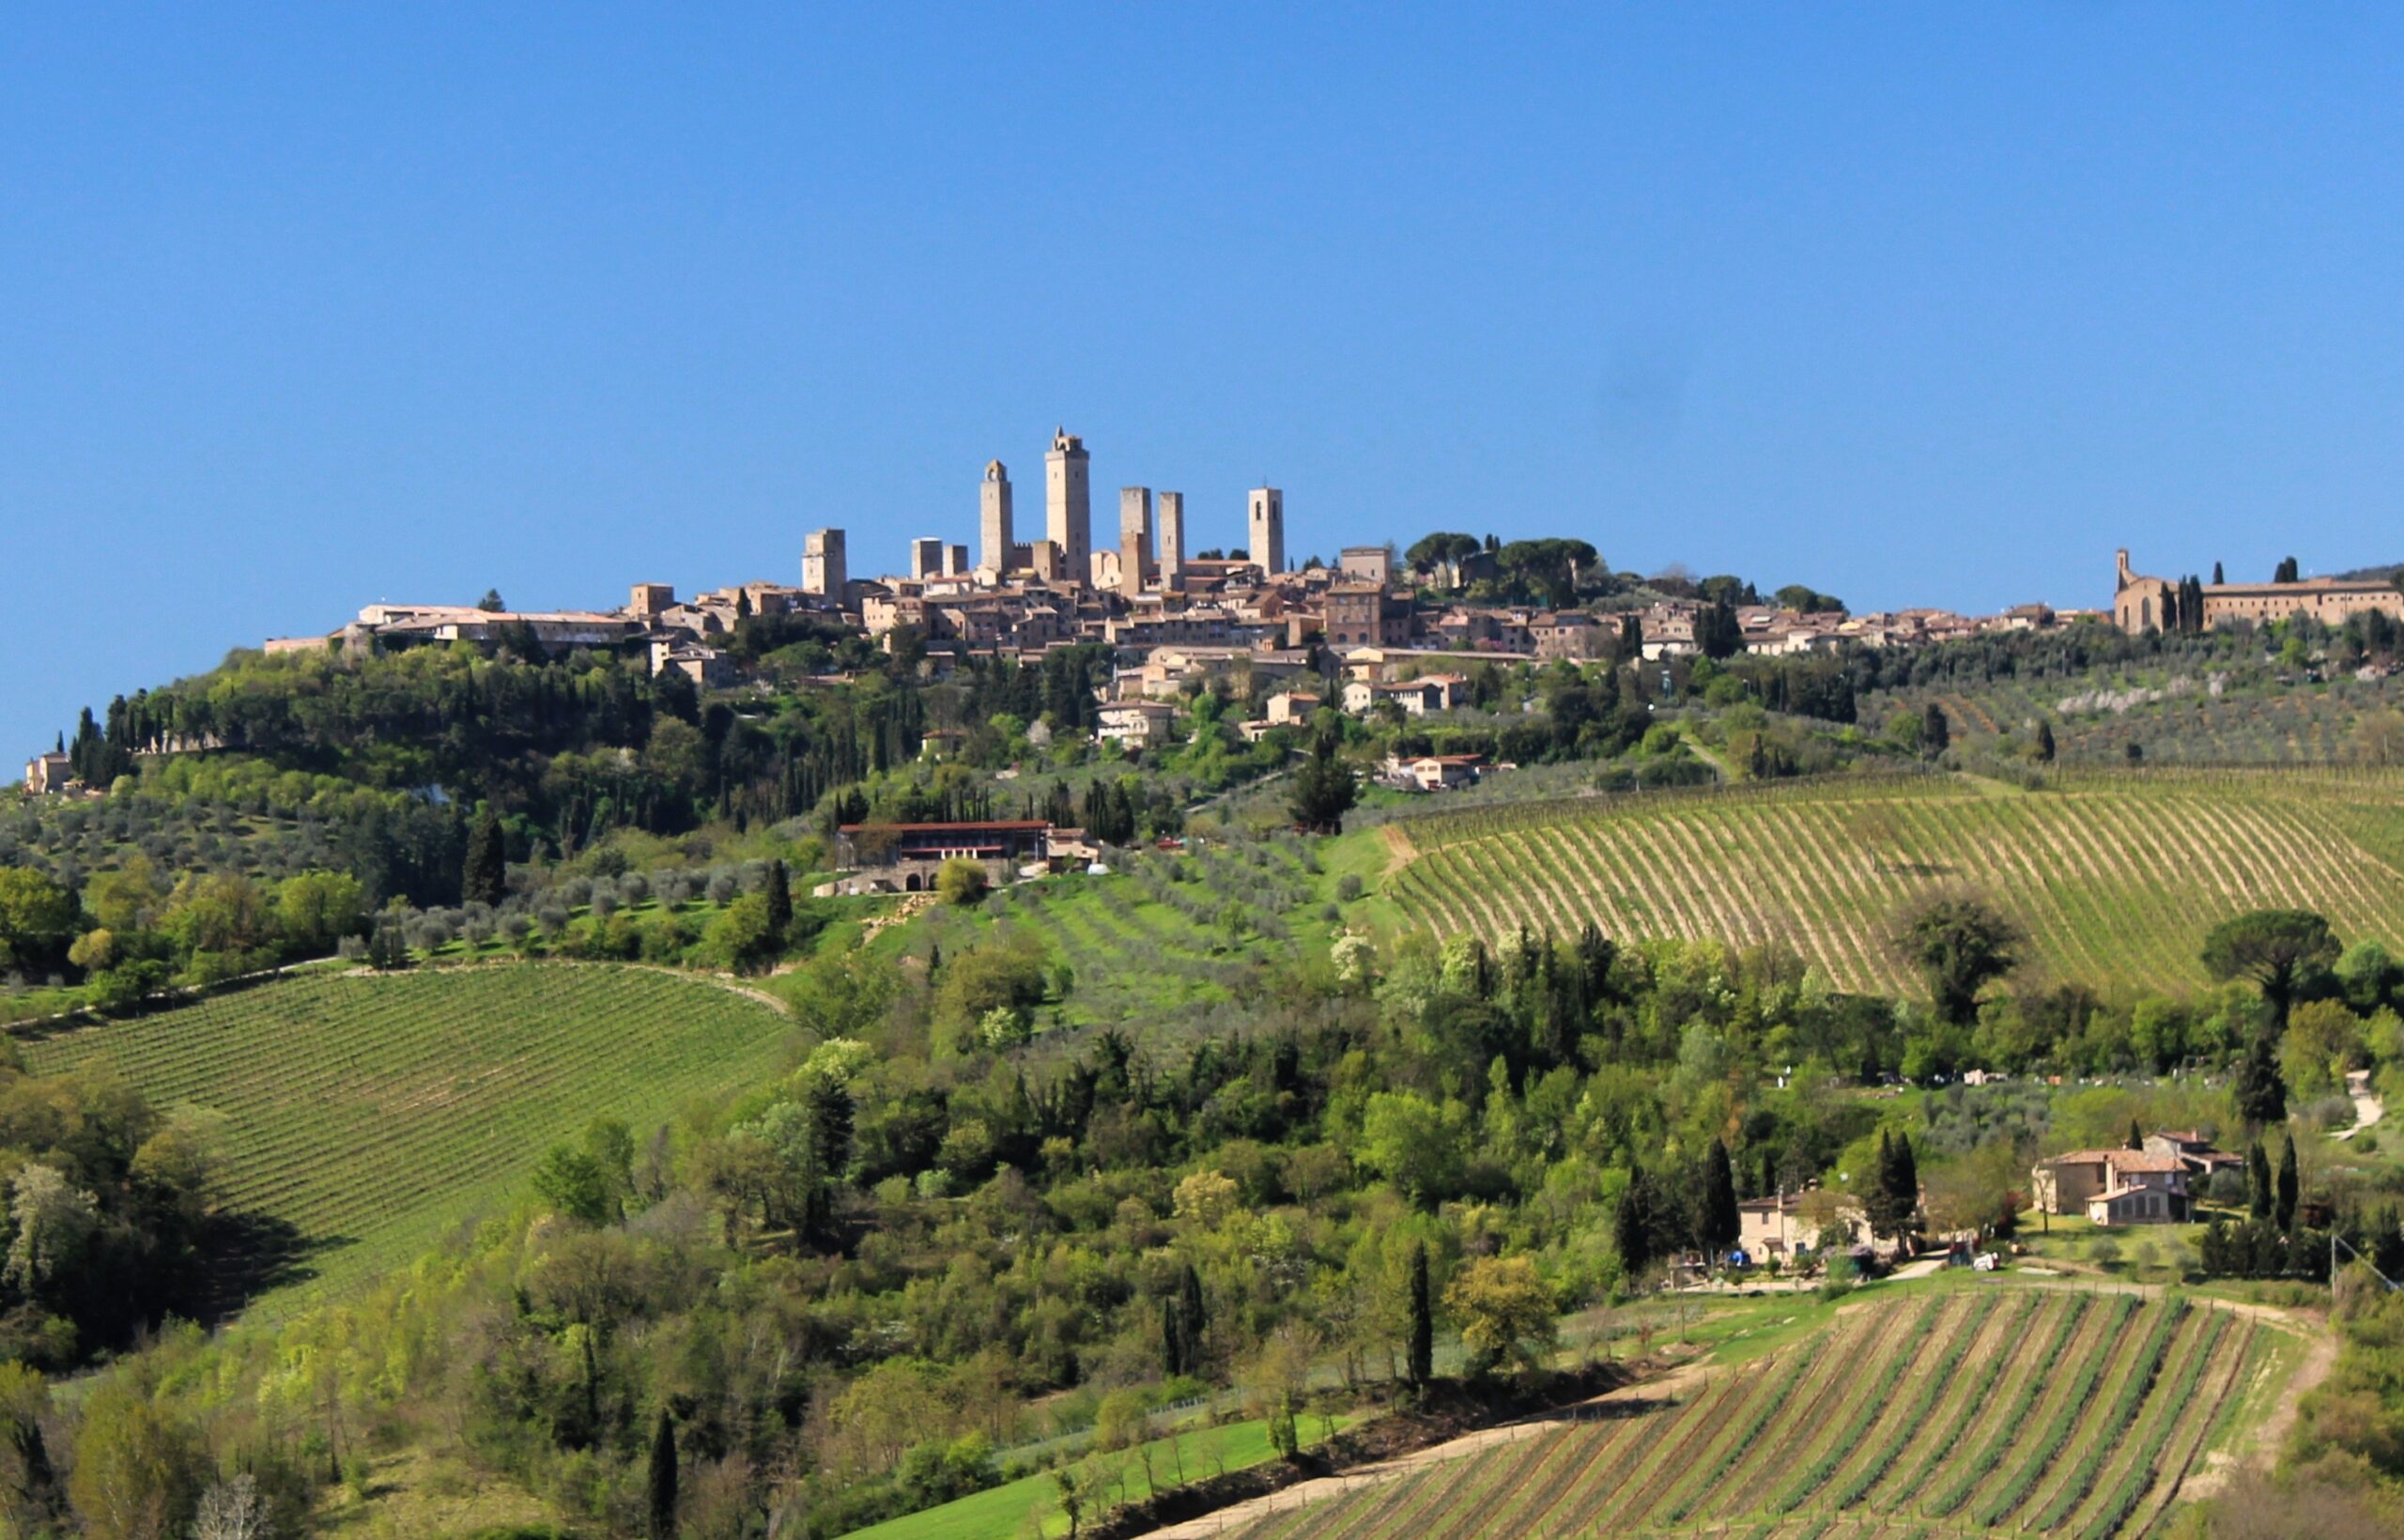 Siti Unesco in Toscana